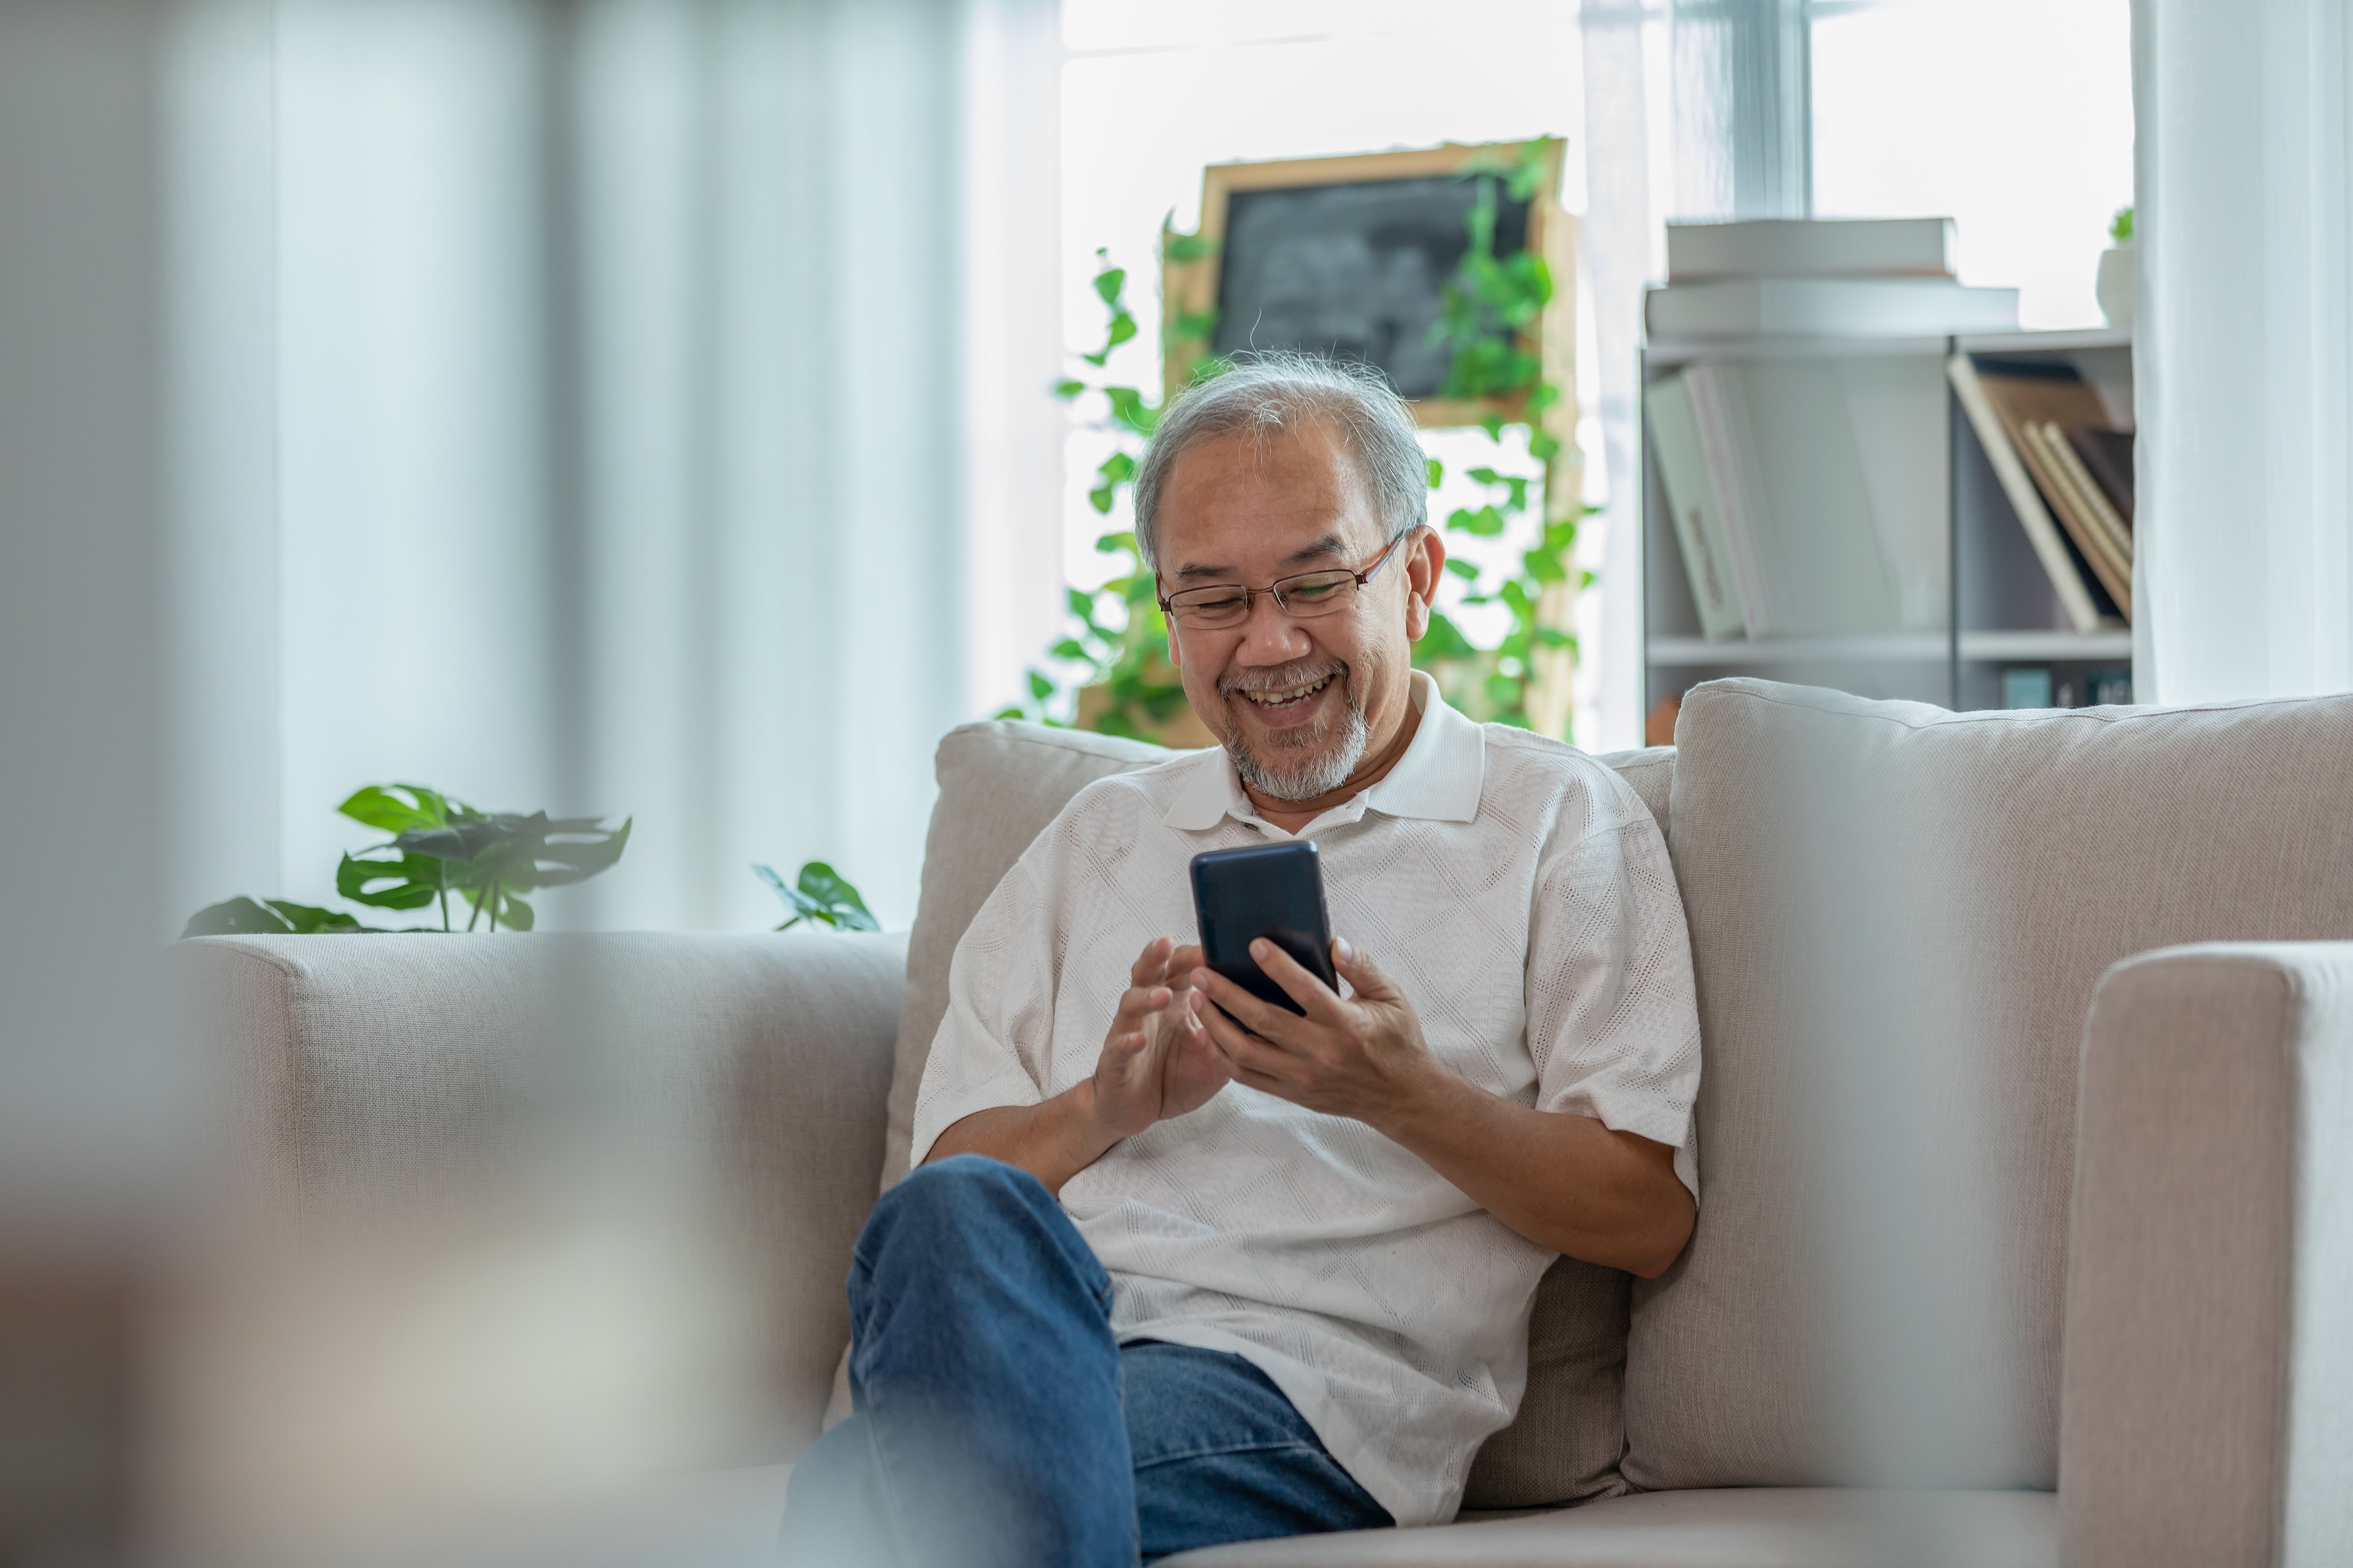 Un homme asiatique âgé est assis sur un canapé gris dans un salon. Il sourit en faisant défiler son téléphone.